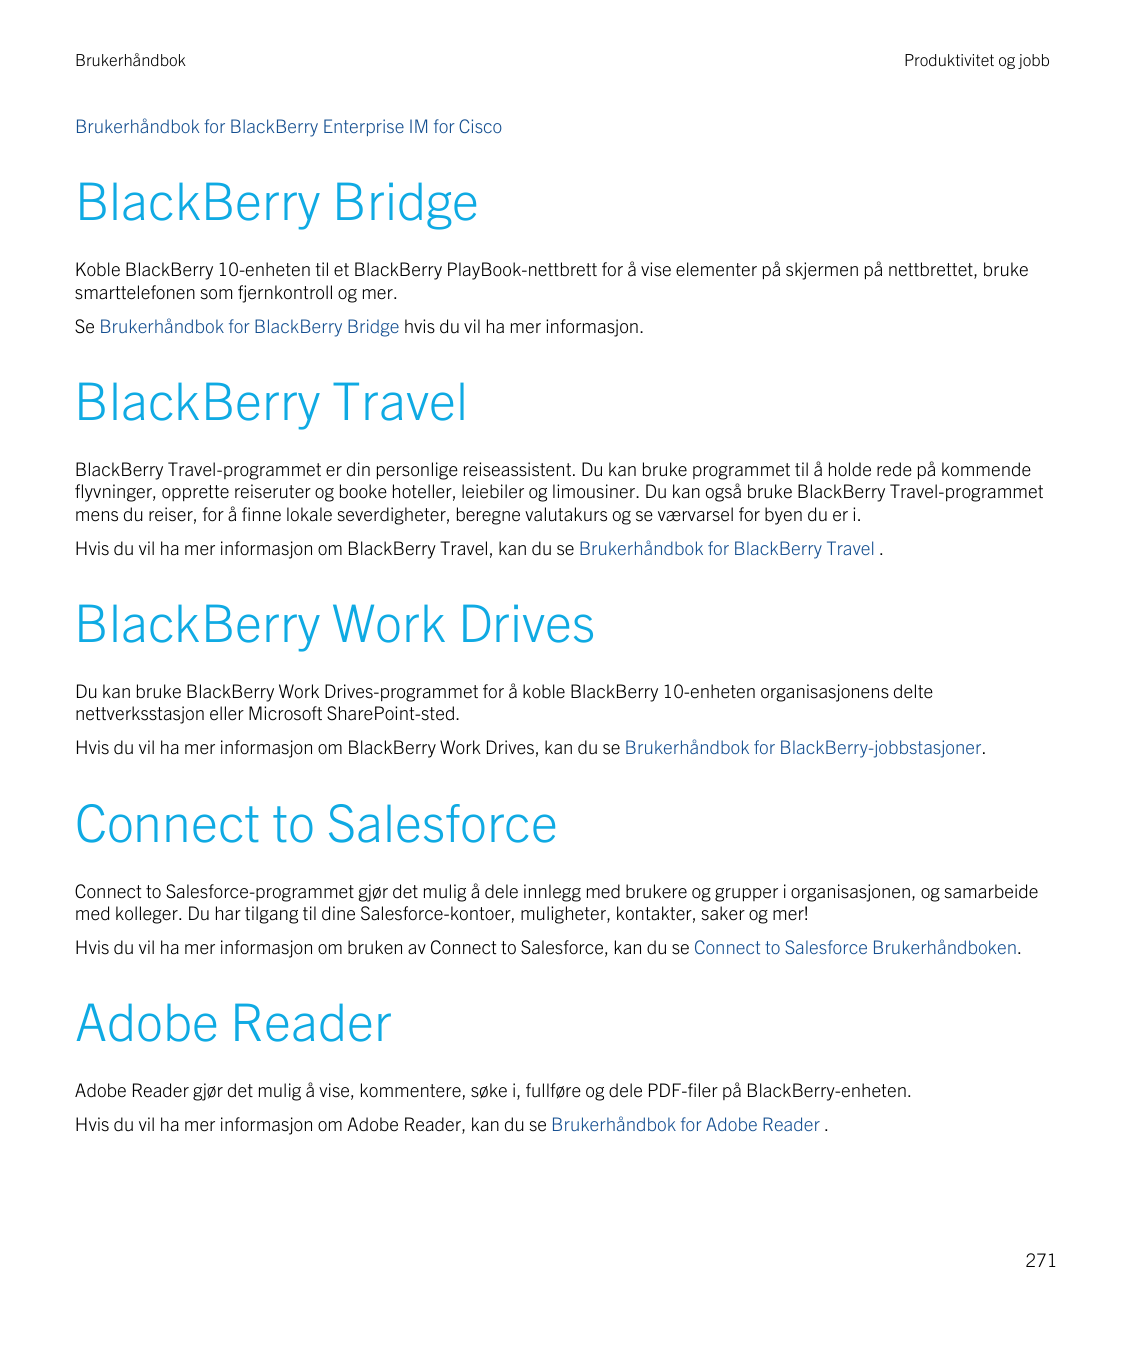 BrukerhåndbokProduktivitet og jobbBrukerhåndbok for BlackBerry Enterprise IM for CiscoBlackBerry BridgeKoble BlackBerry 10-enhet